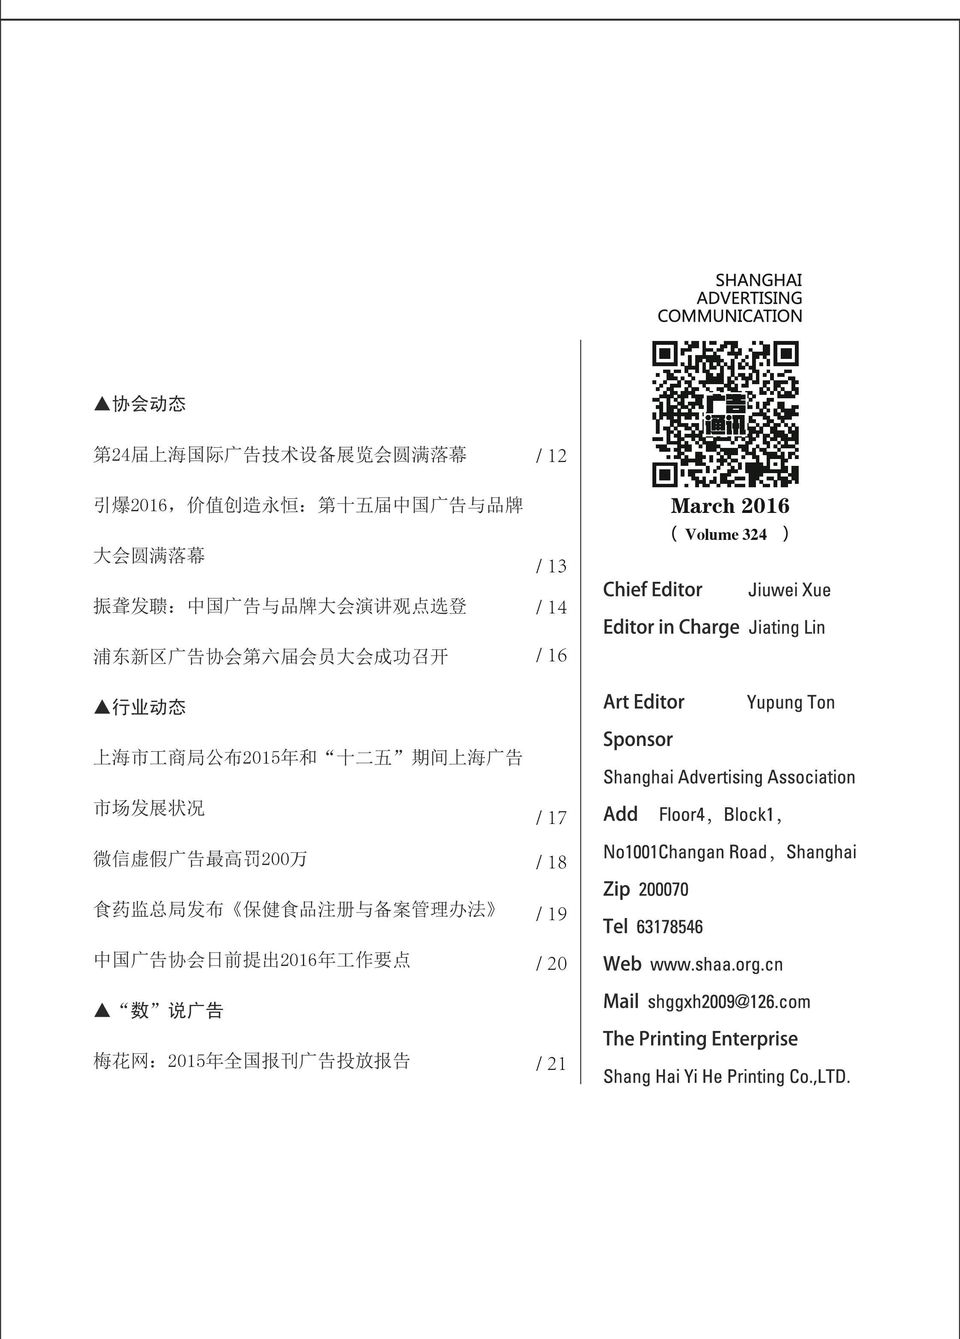 324 行 业 动 态 上 海 市 工 商 局 公 布 2015 年 和 十 二 五 期 间 上 海 广 告 市 场 发 展 状 况 微 信 虚 假 广 告 最 高 罚 200 万 食 药 监 总 局 发